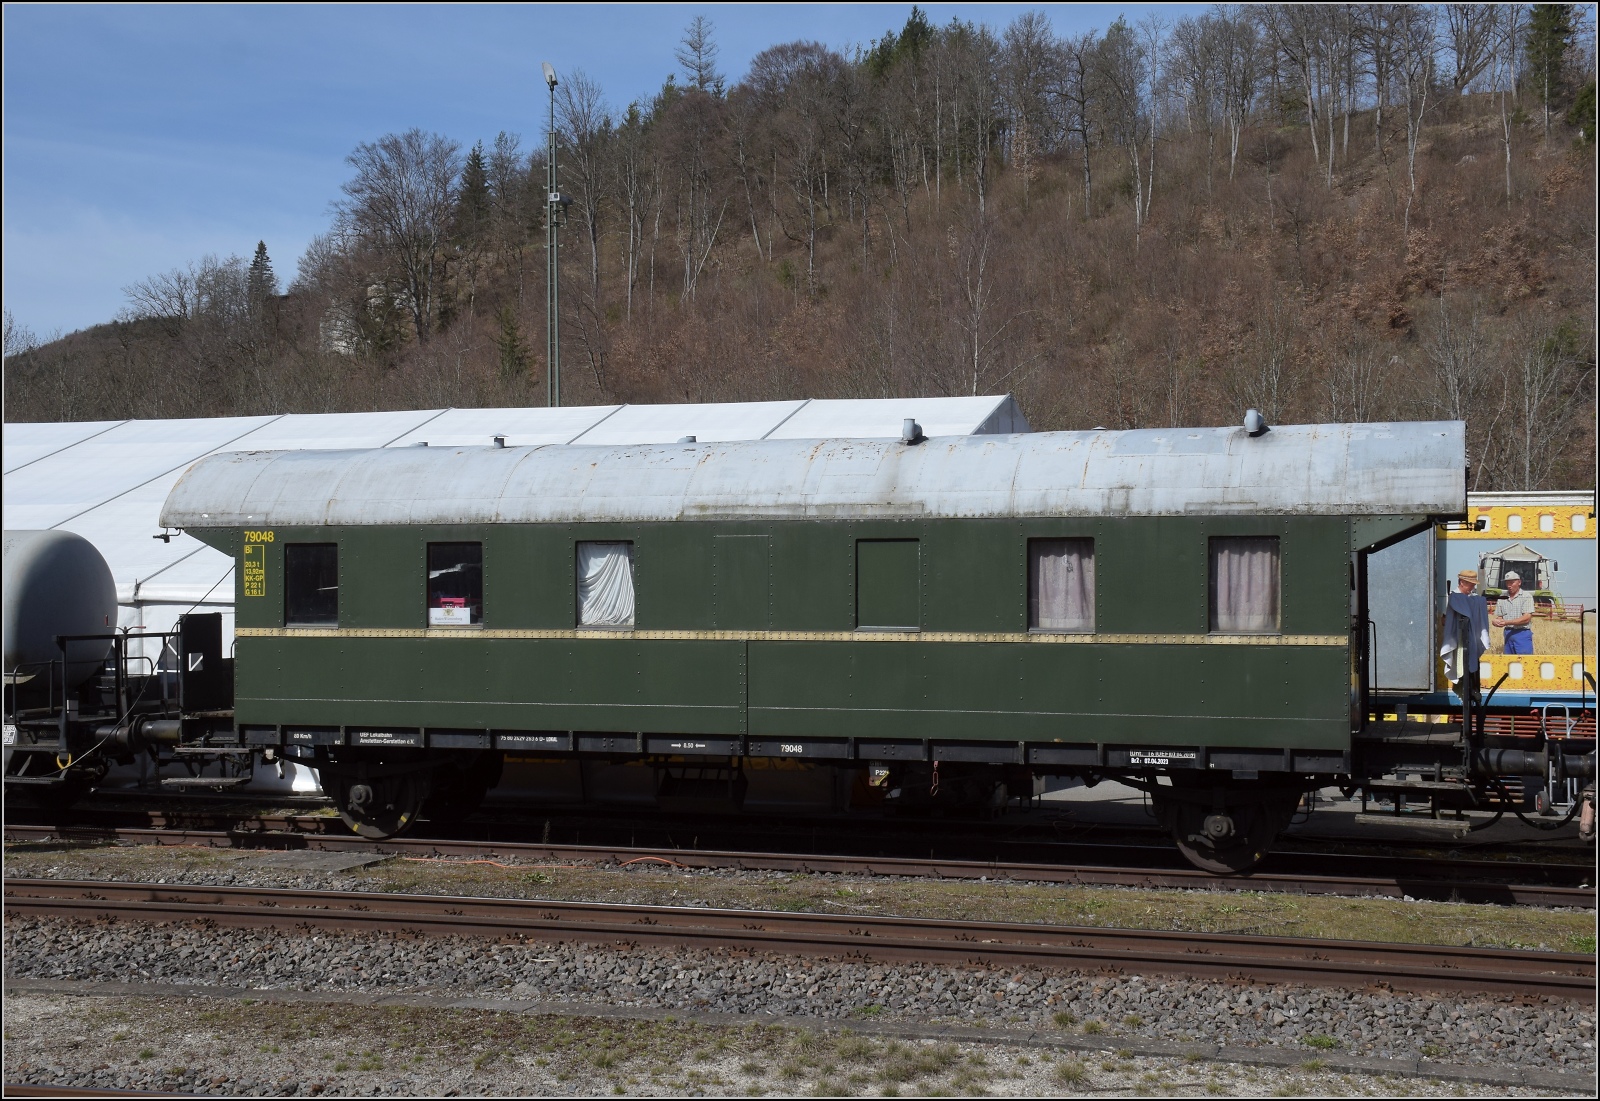 50 Jahre EFZ.

Die Donnerbüchse Bi 79048 der UEF ist ein Wohn- und Werkstattwagen und hört heute auf die NVR-Nummer 75 80 2429 263 6 D-LOKAL. Storzingen, April 2023.